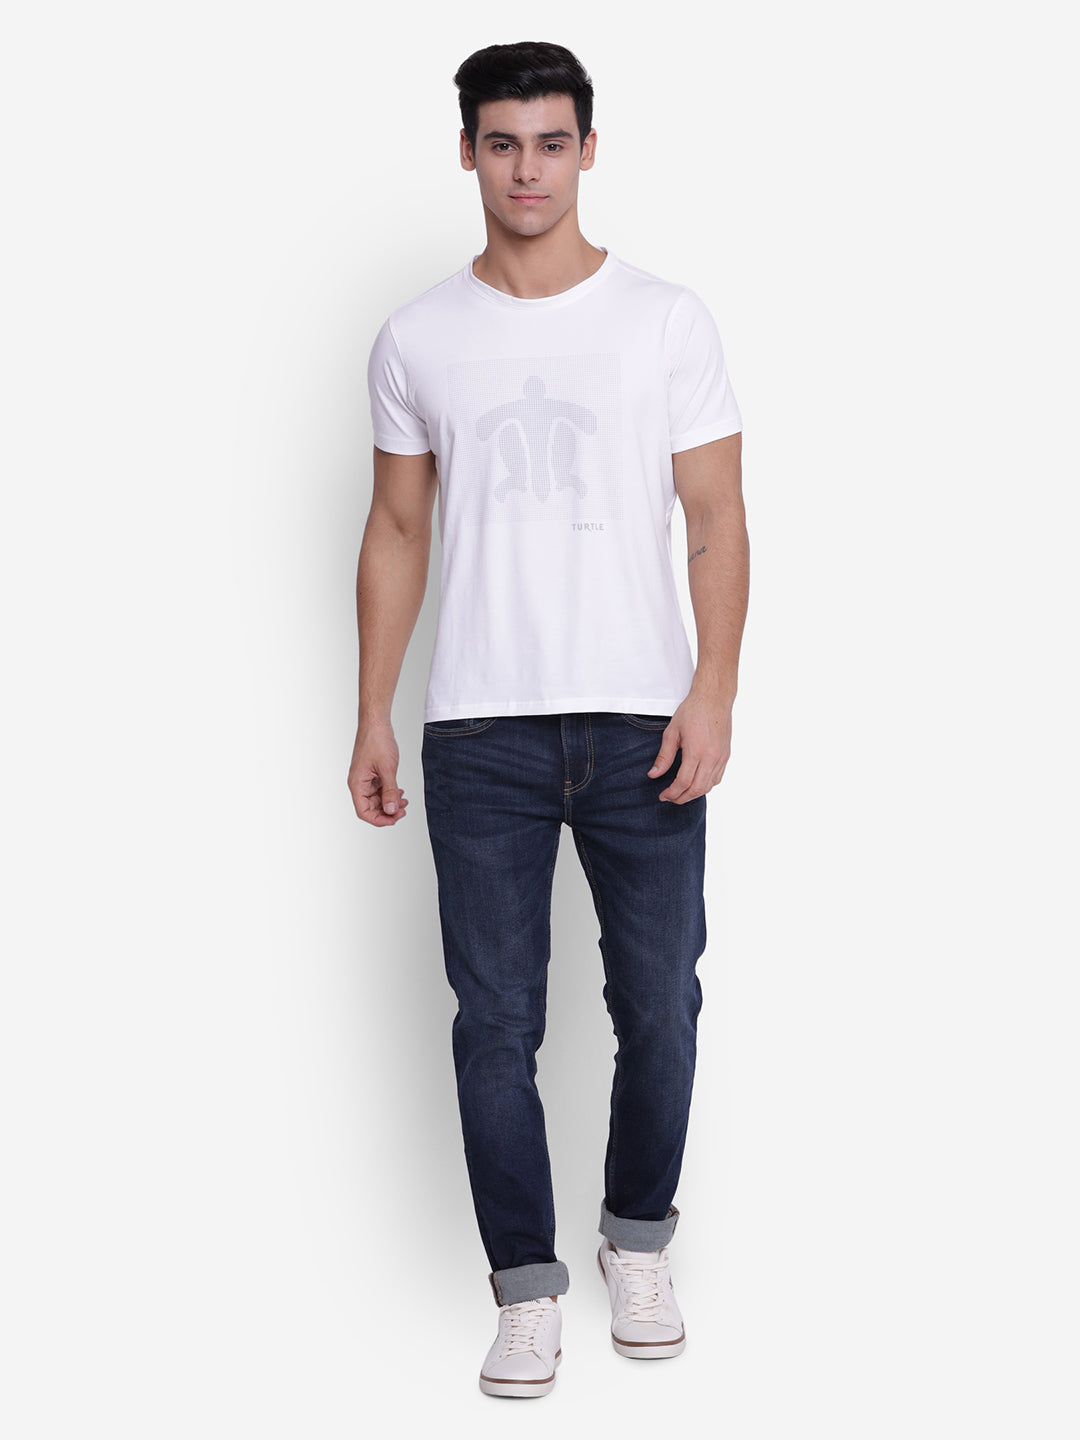 Printed White Crew Neck Men T-Shirt for Men